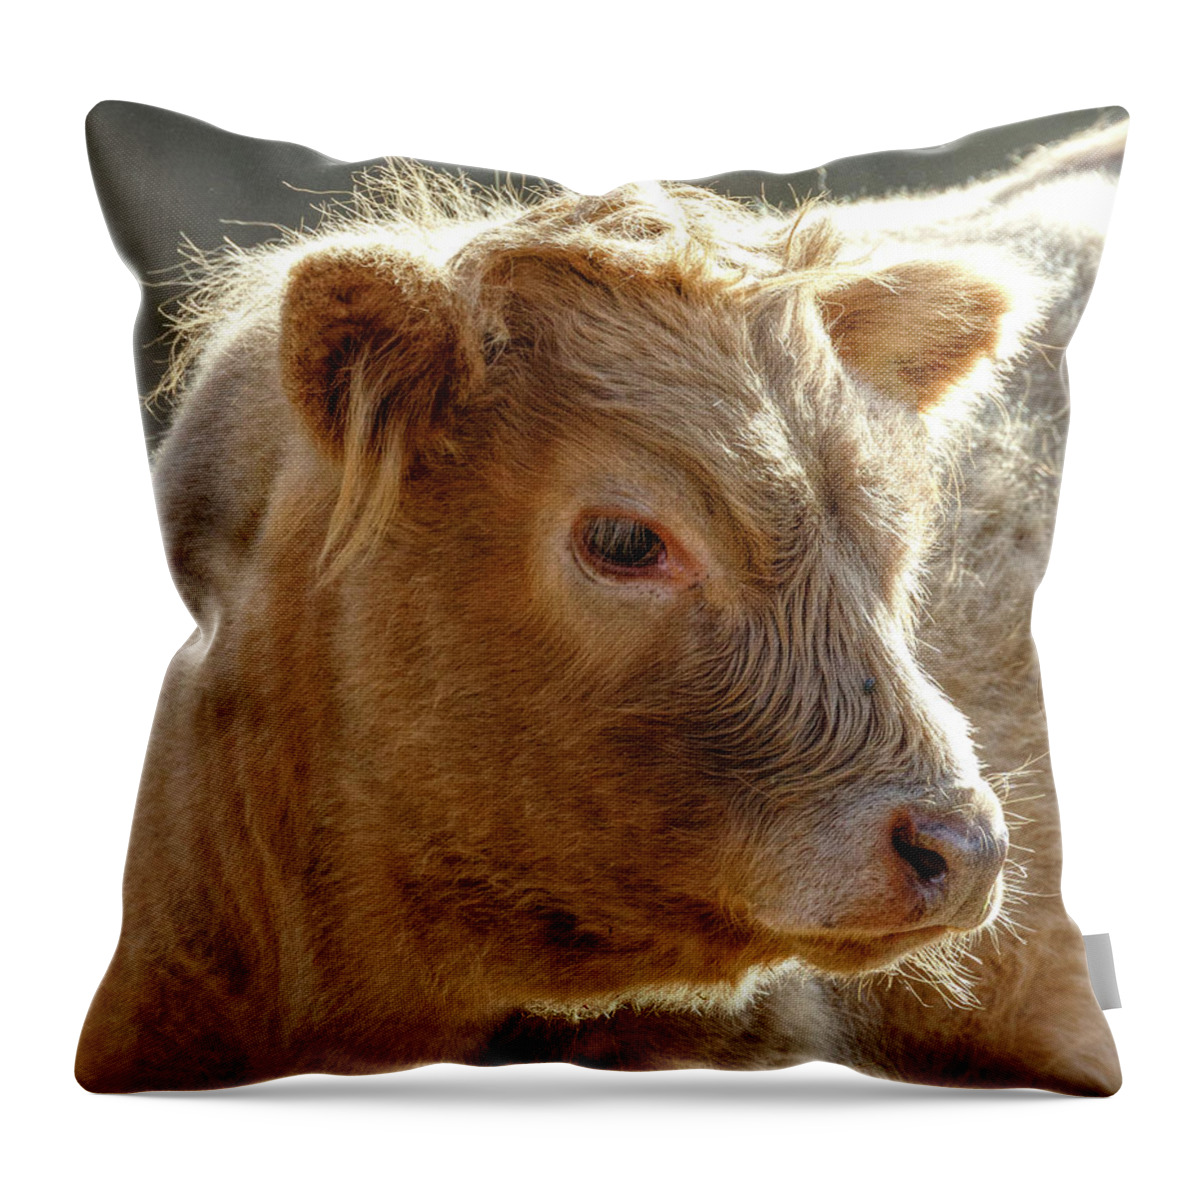 Scottish Highland Calf Throw Pillow featuring the photograph Scottish Highland Calf by Wes and Dotty Weber